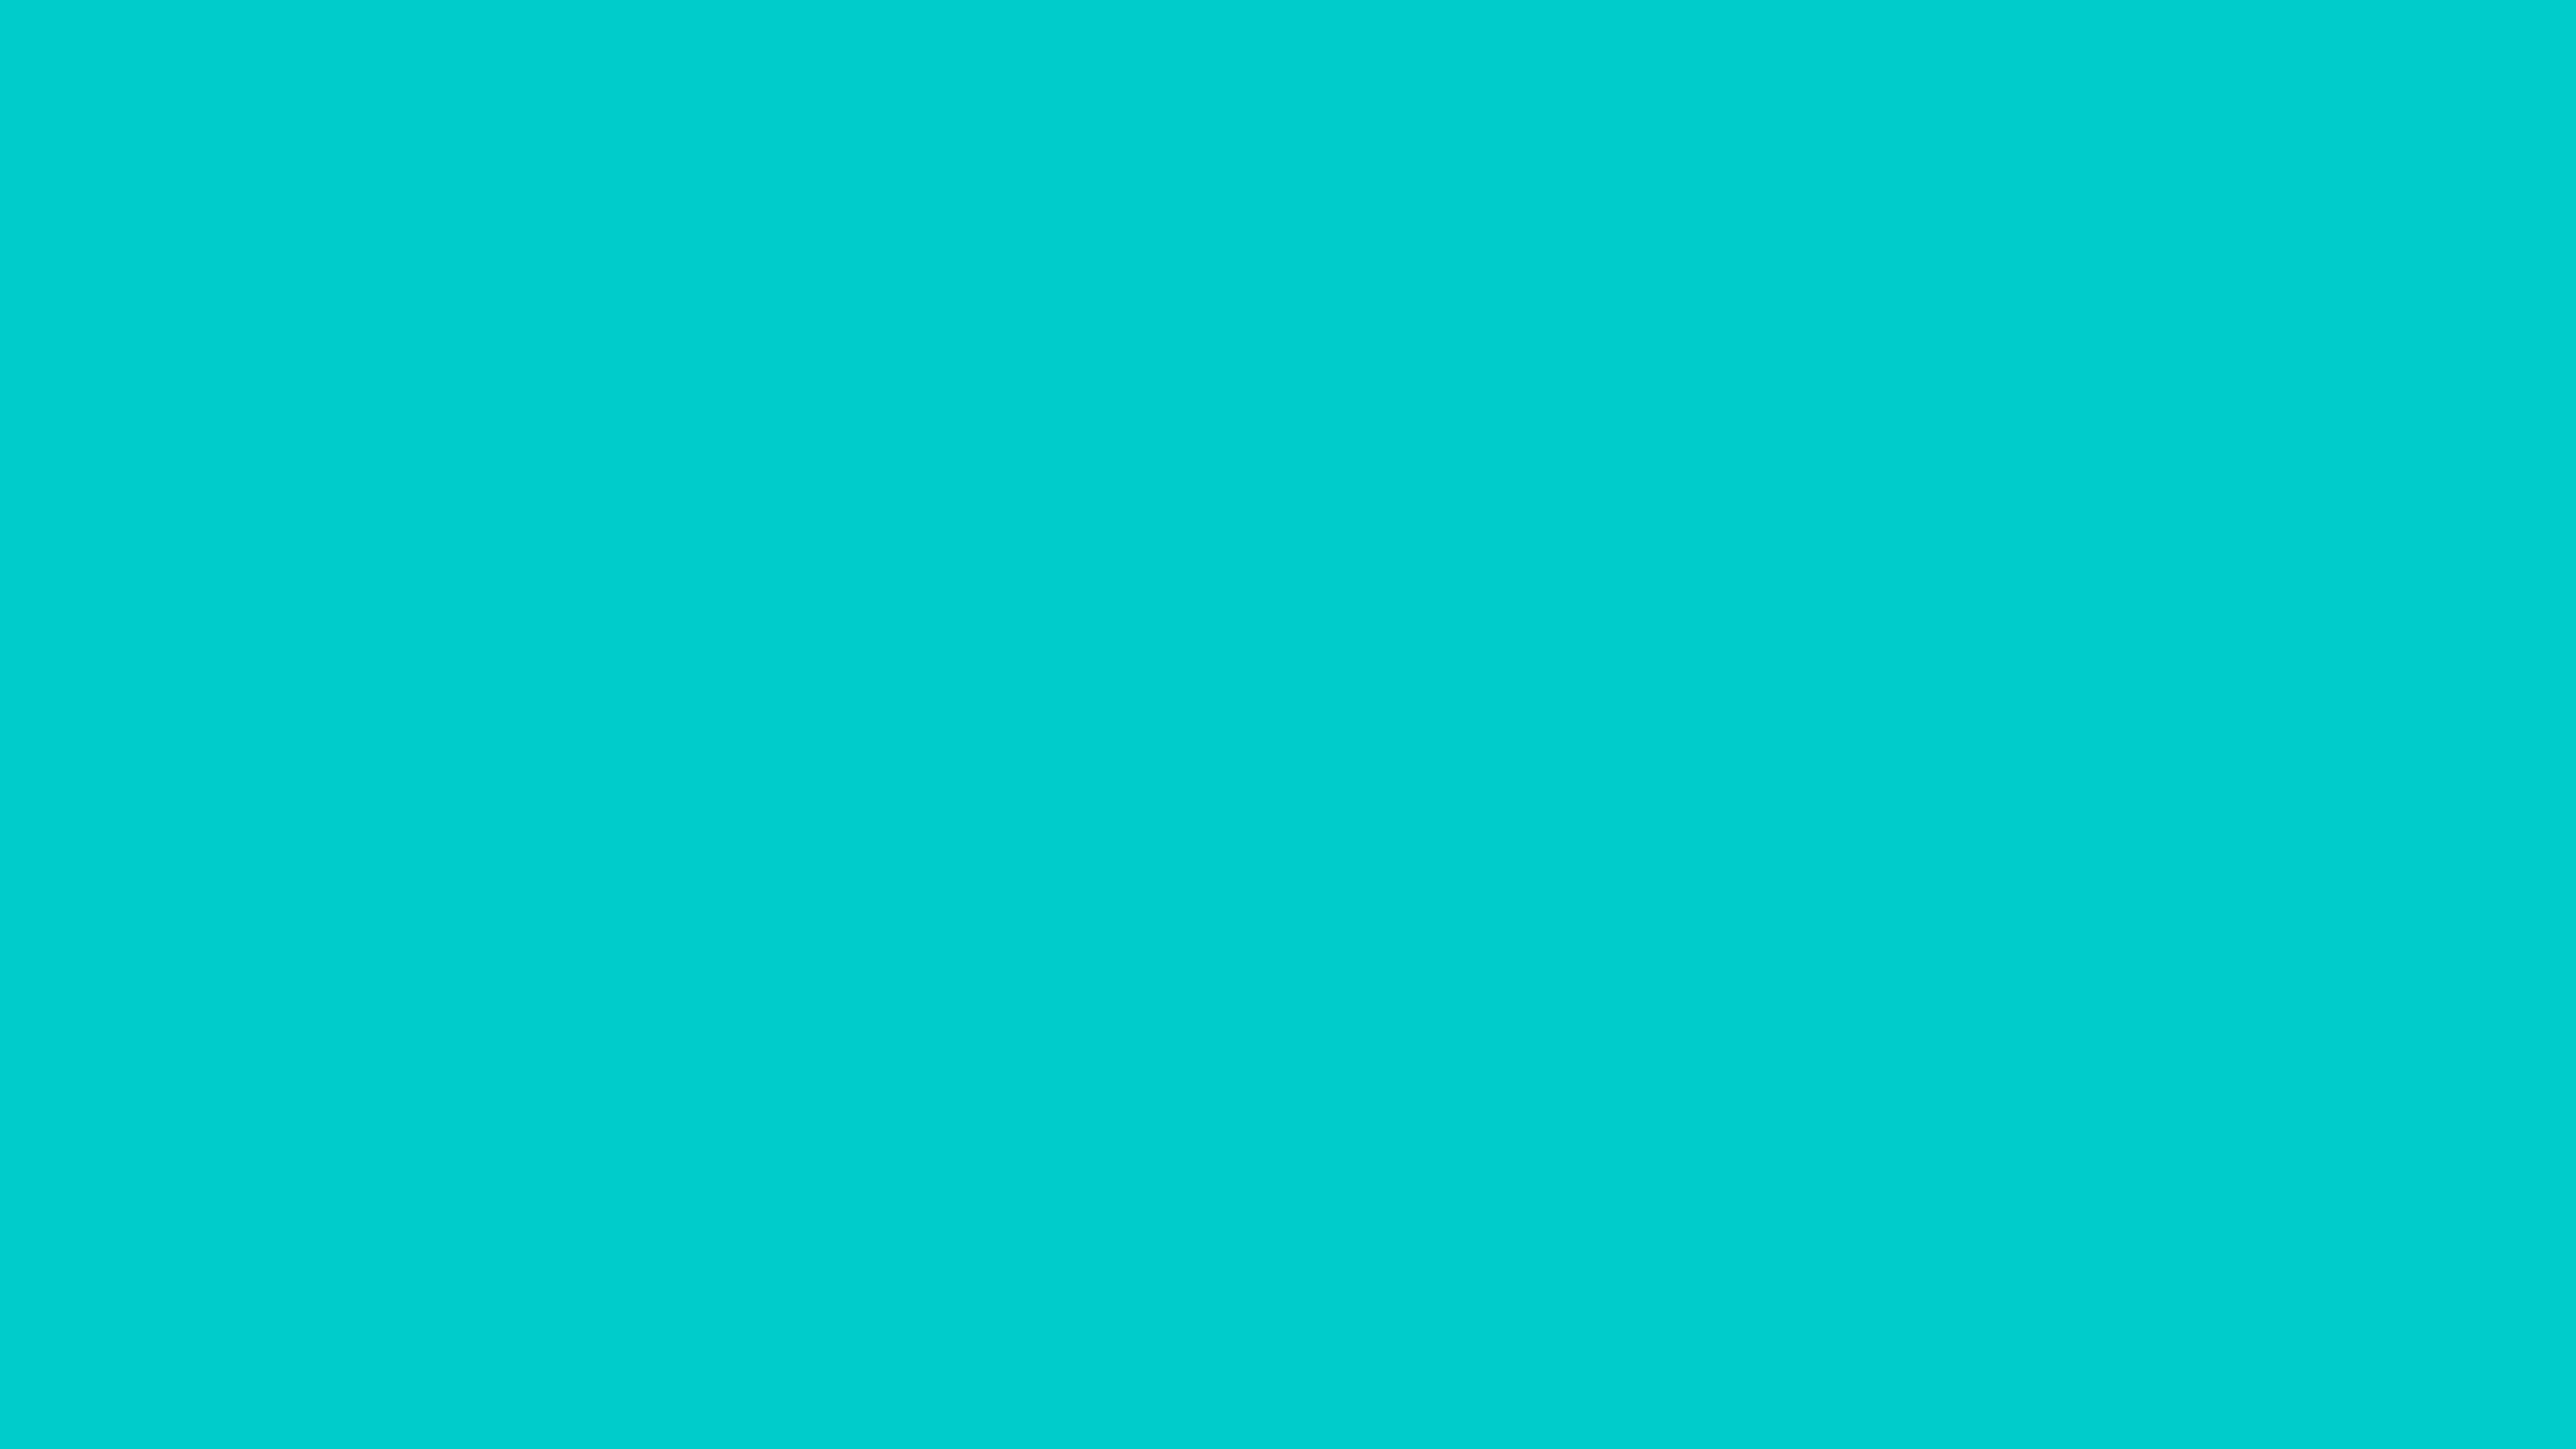 7680x4320 Robin Egg Blue Solid Color Background